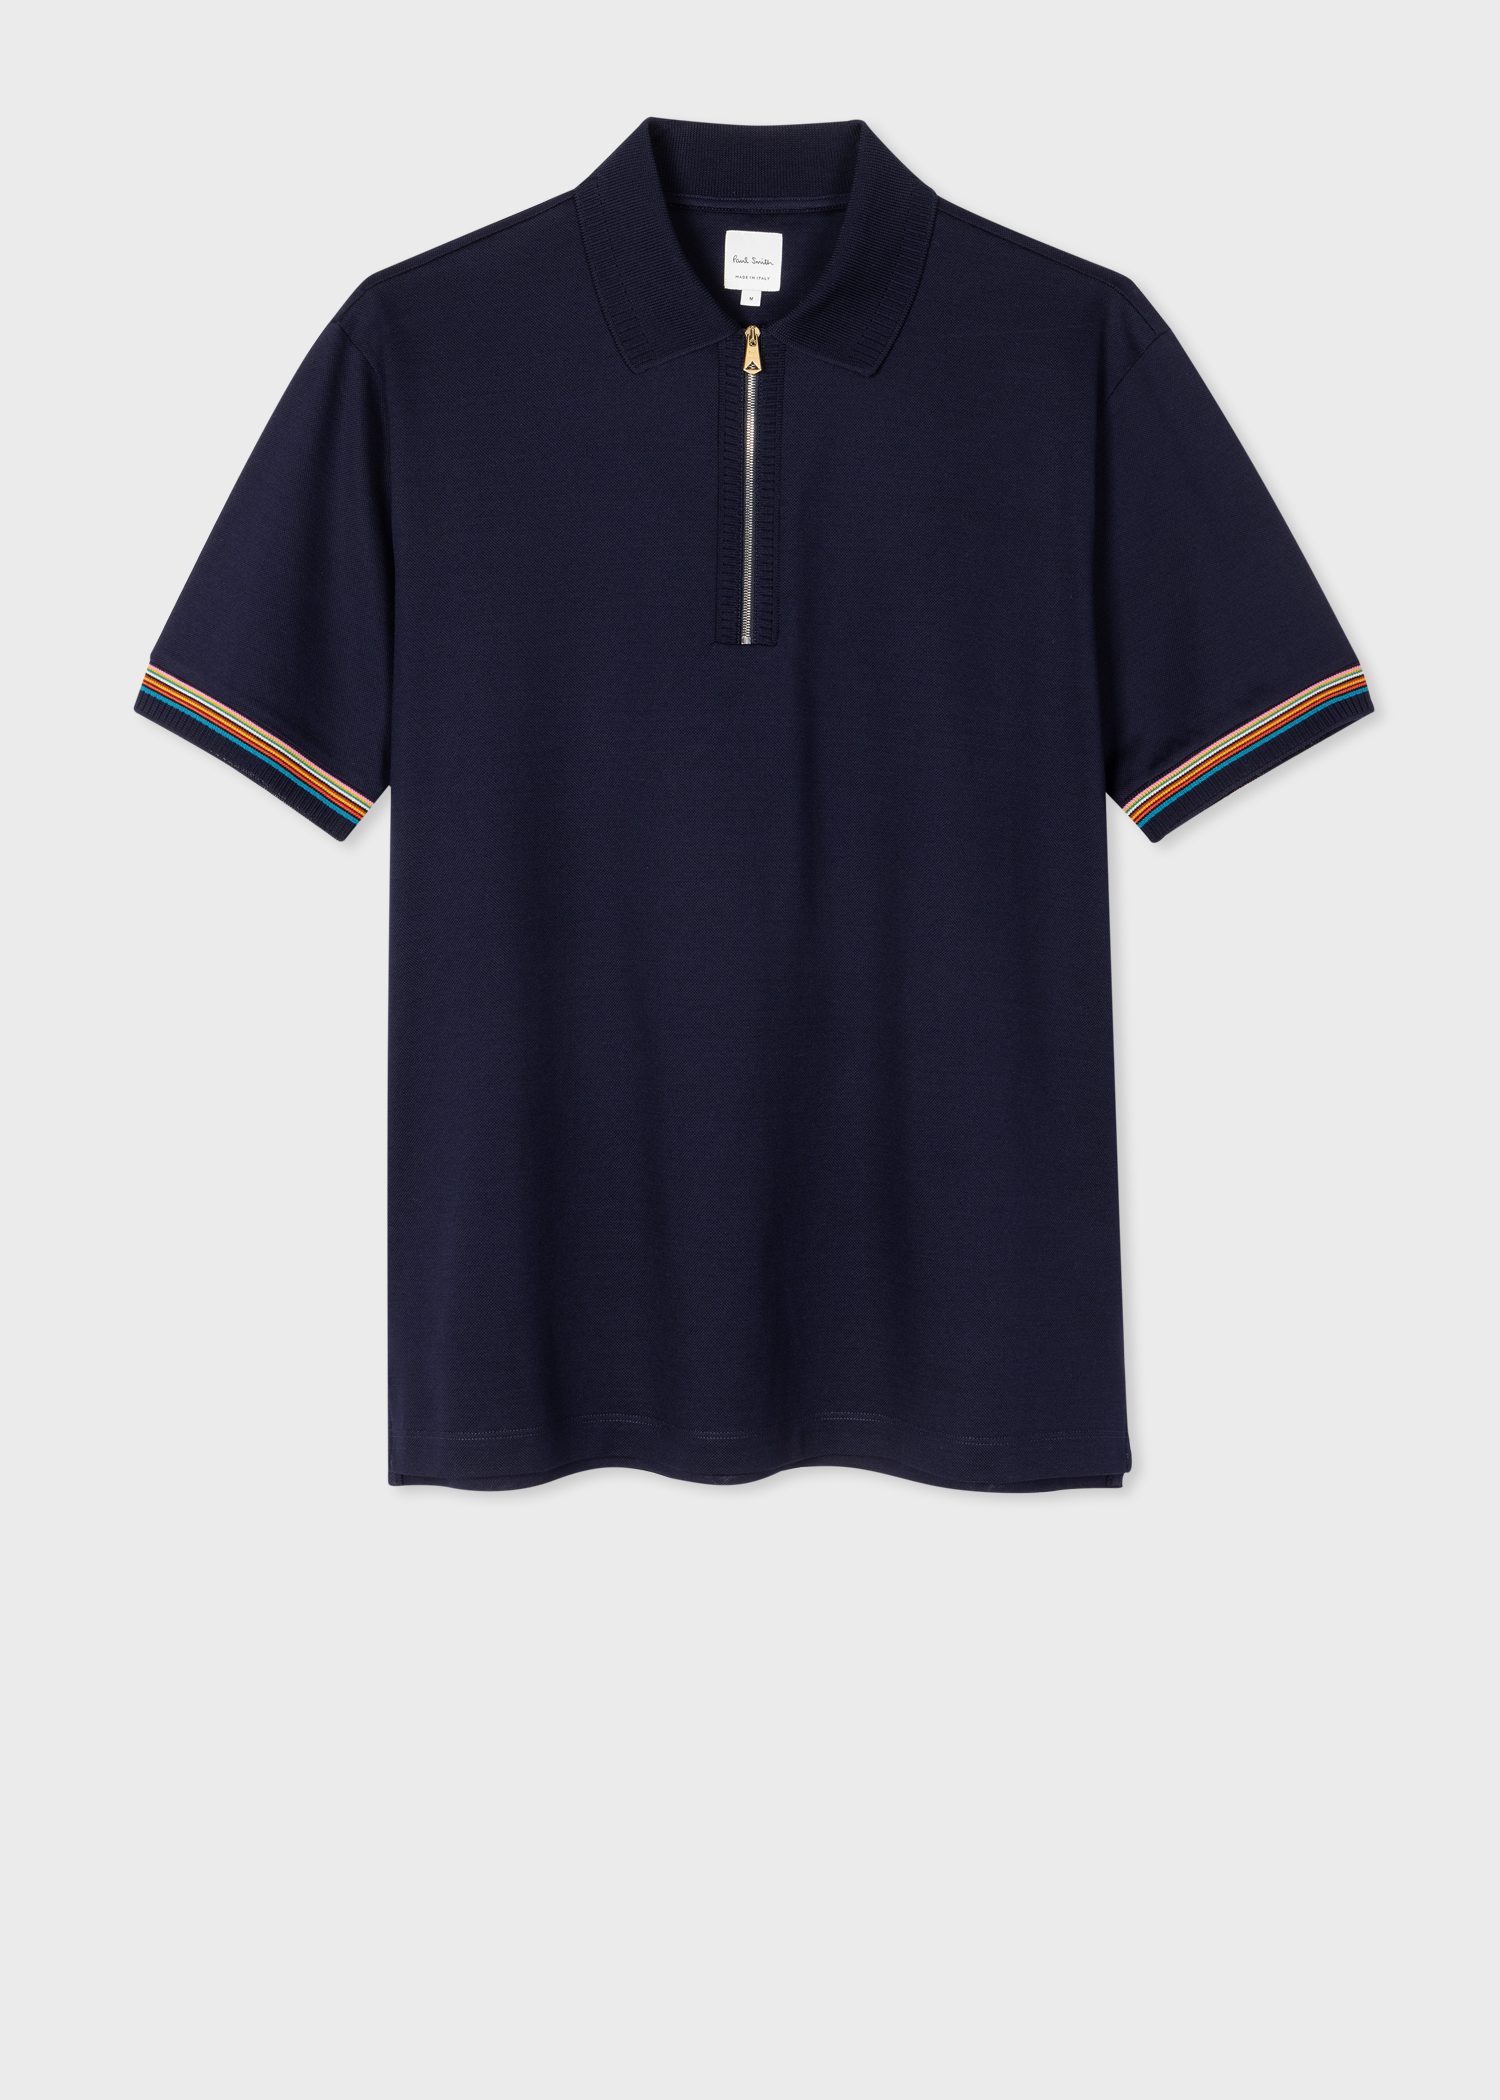 Men's Navy Cotton 'Signature Stripe' Trim Zip Polo Shirt